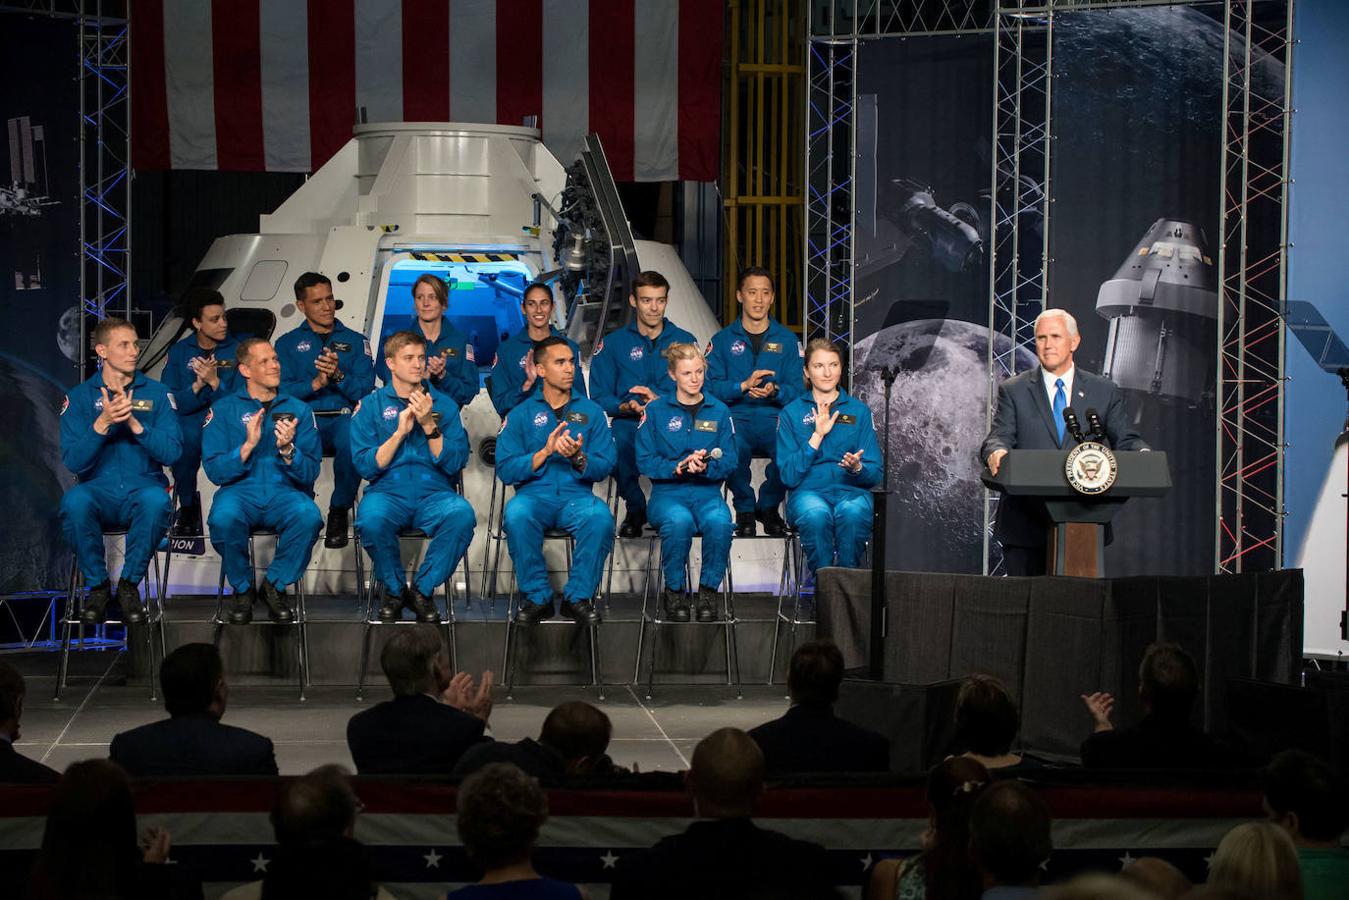 El vicepresidente Pence se dirige al público en un acto de la NASA